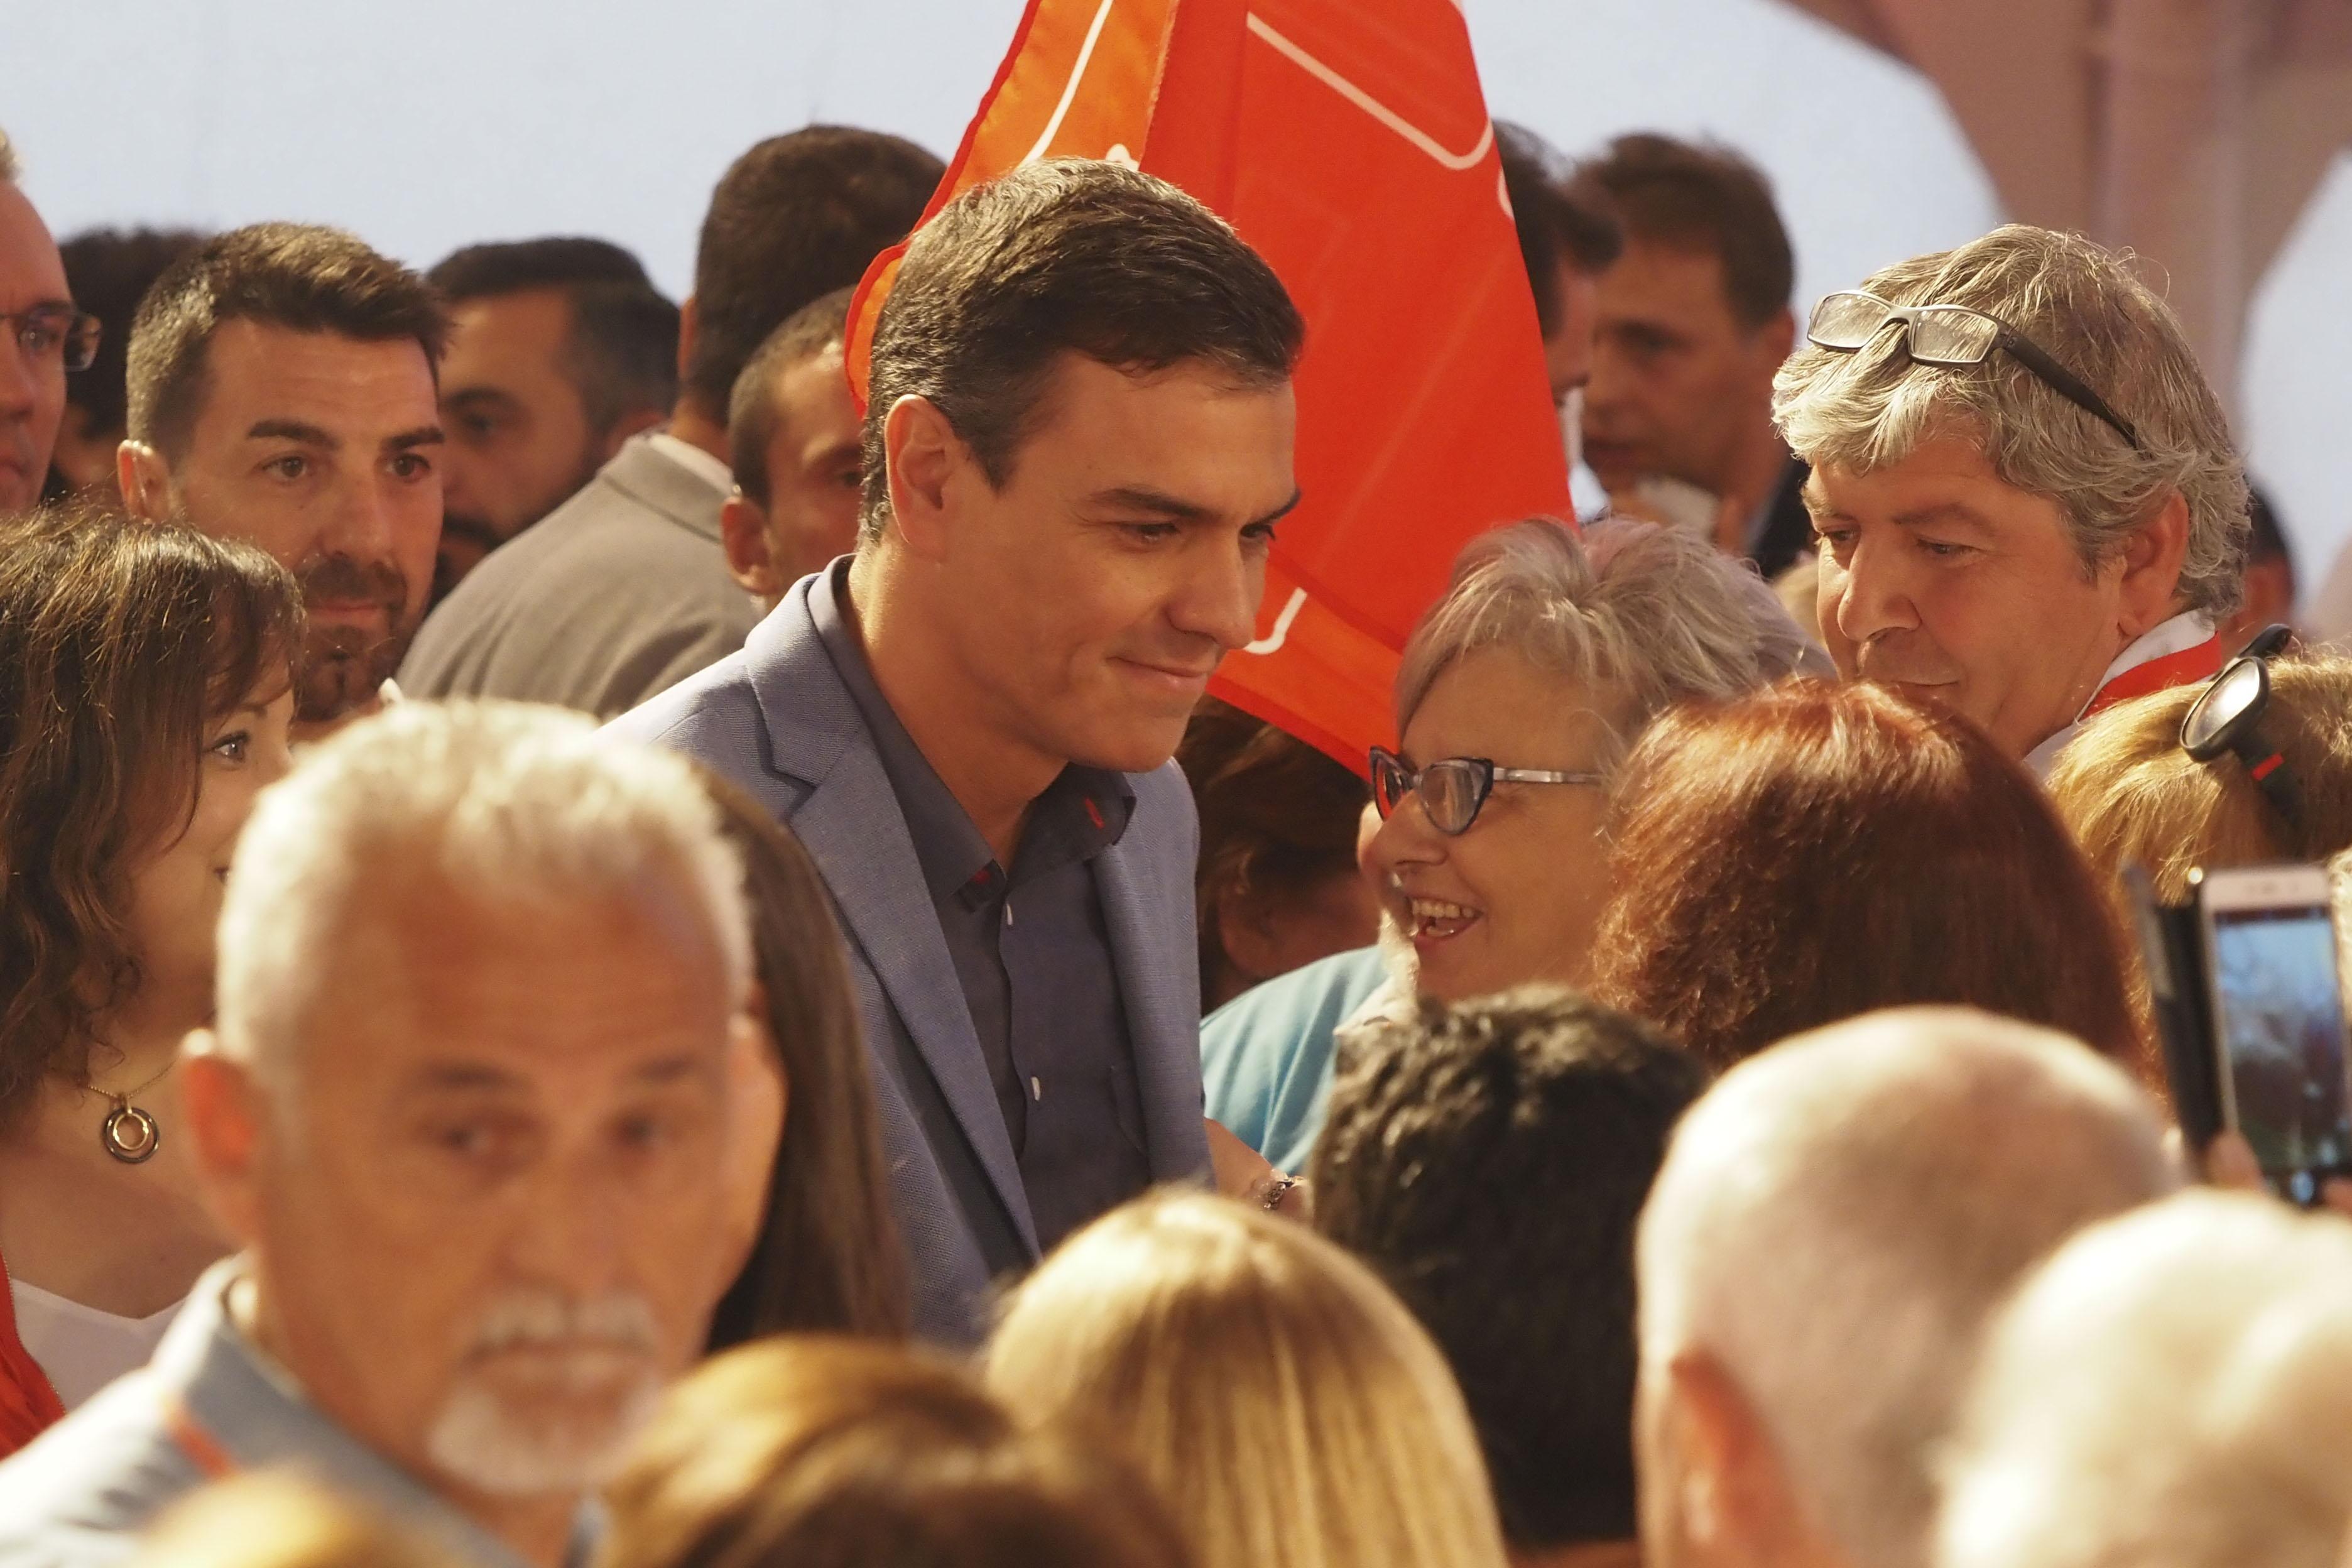 El presidente del Gobierno en funciones Pedro Sánchez a su llegada al acto político socialista en la Cúpula del Milenio en Valladolid a 11 de octubre de 2019